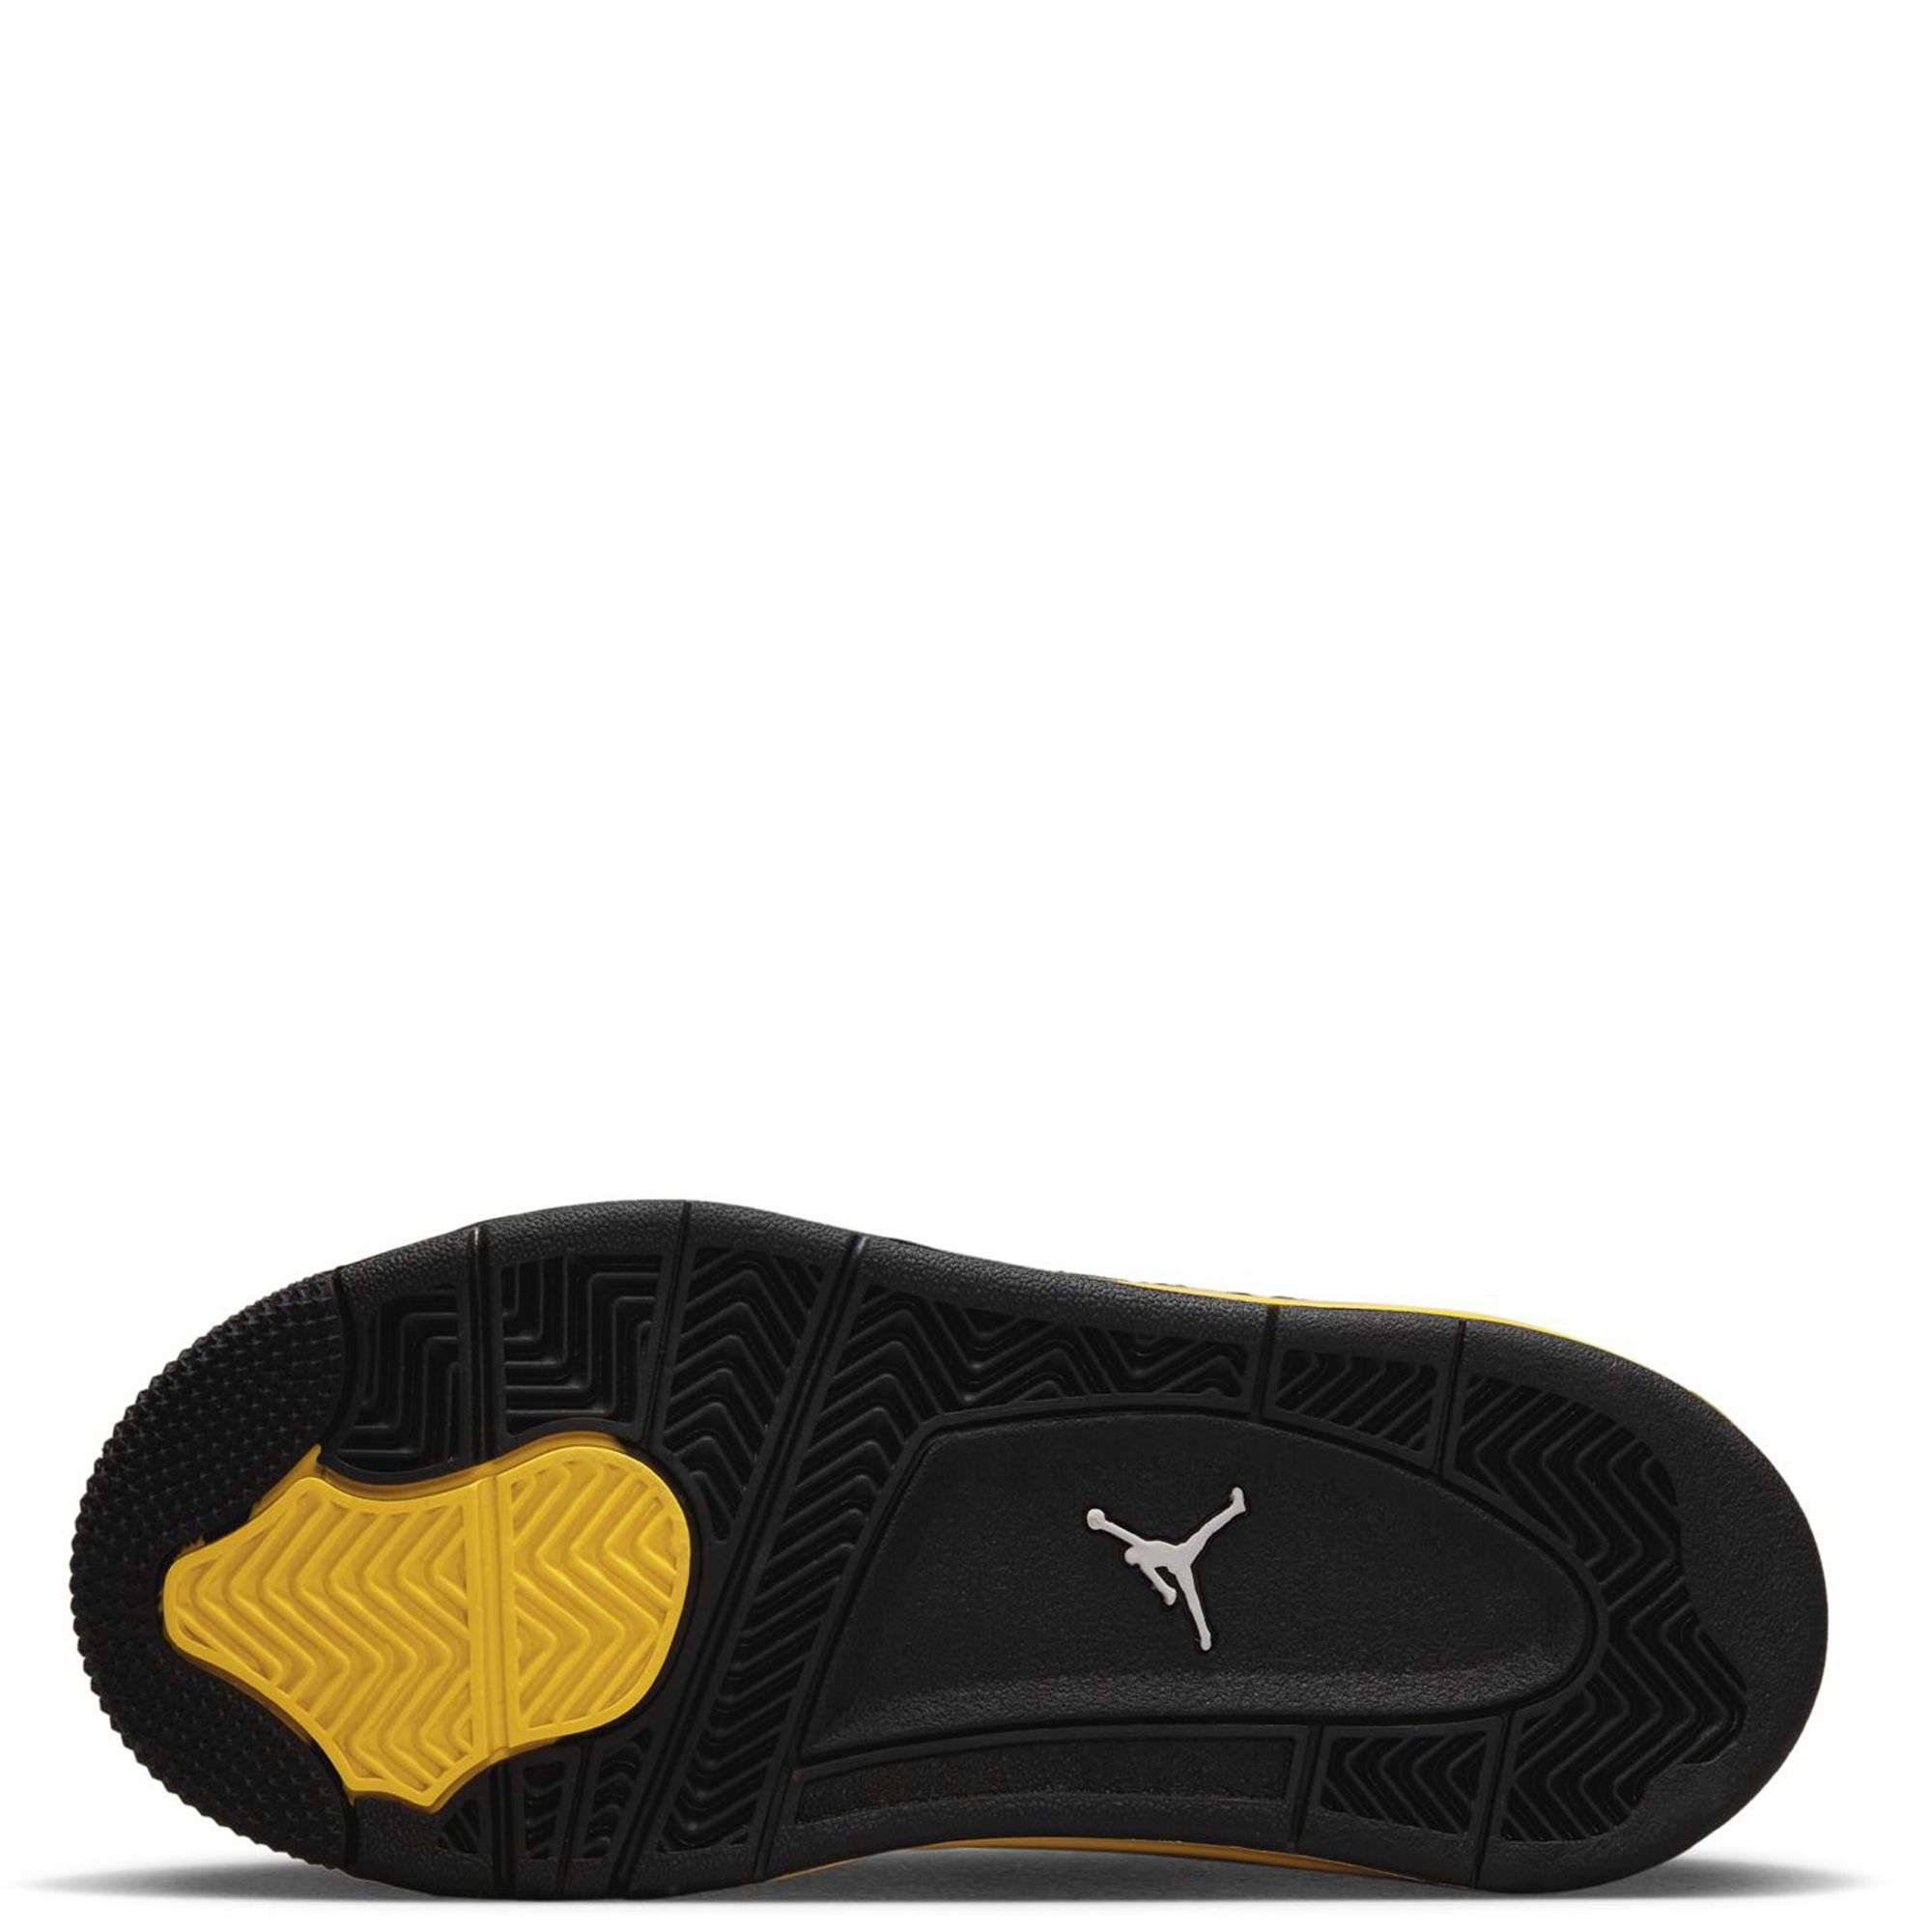 Air Jordan 4 Retro - 308497 106, Black/White-tour Yellow, 7 UK